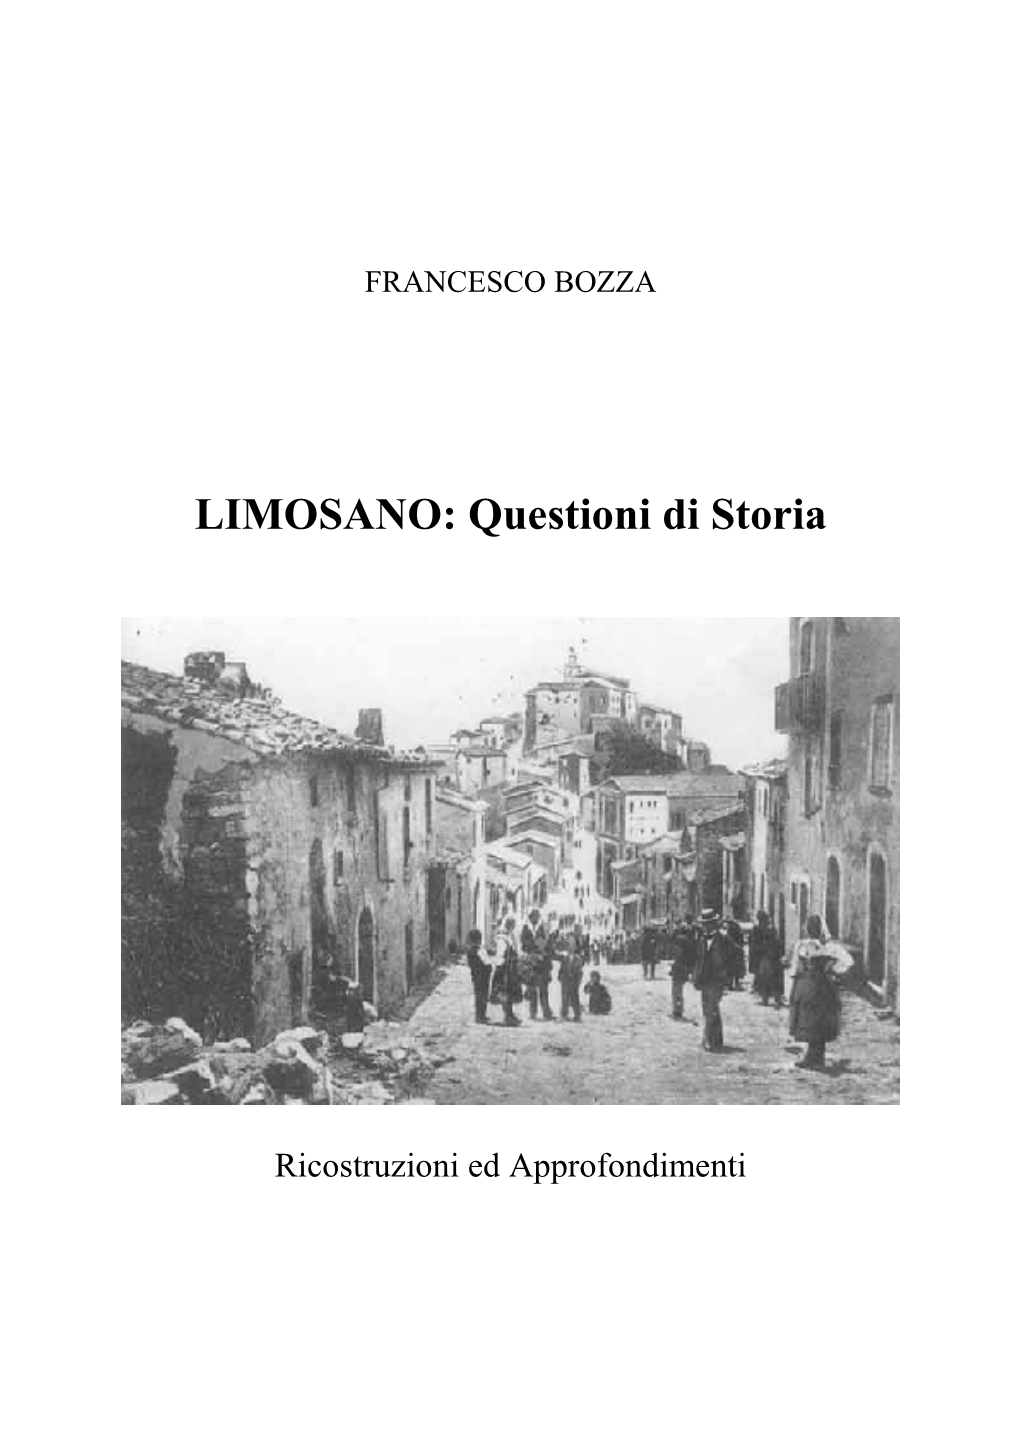 FRANCESCO BOZZA, LIMOSANO: Questioni Di Storia